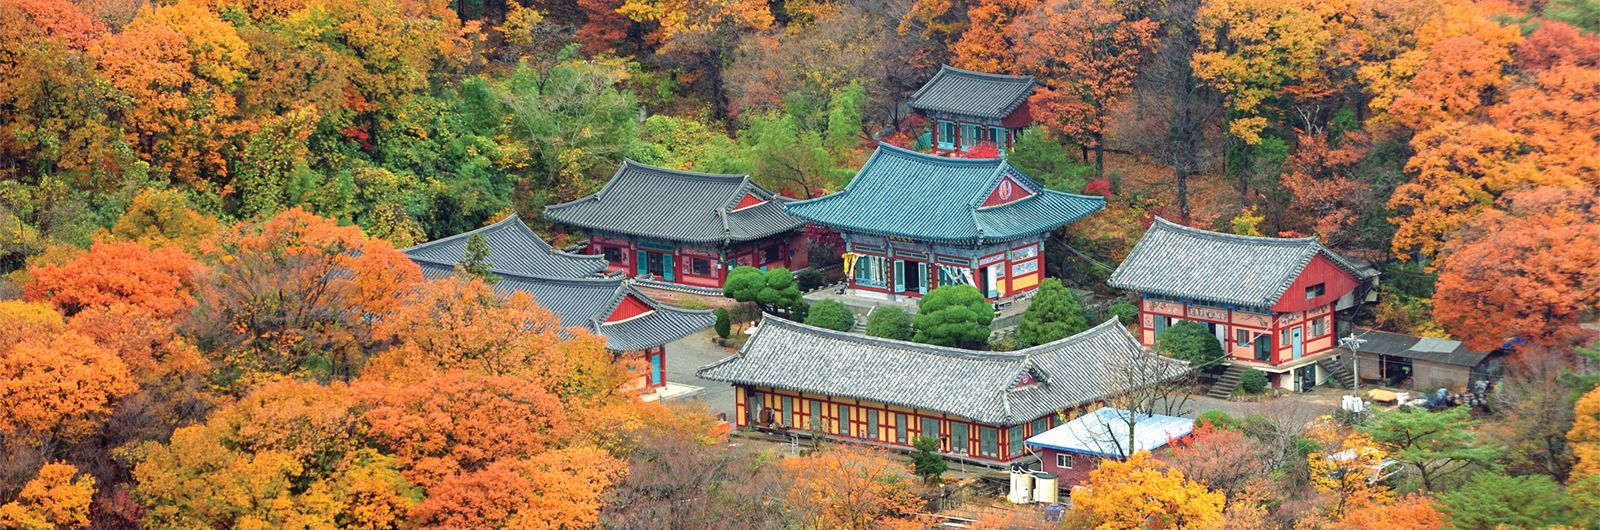 Corea del Sur. El pueblo de Han - Daehan Minguk